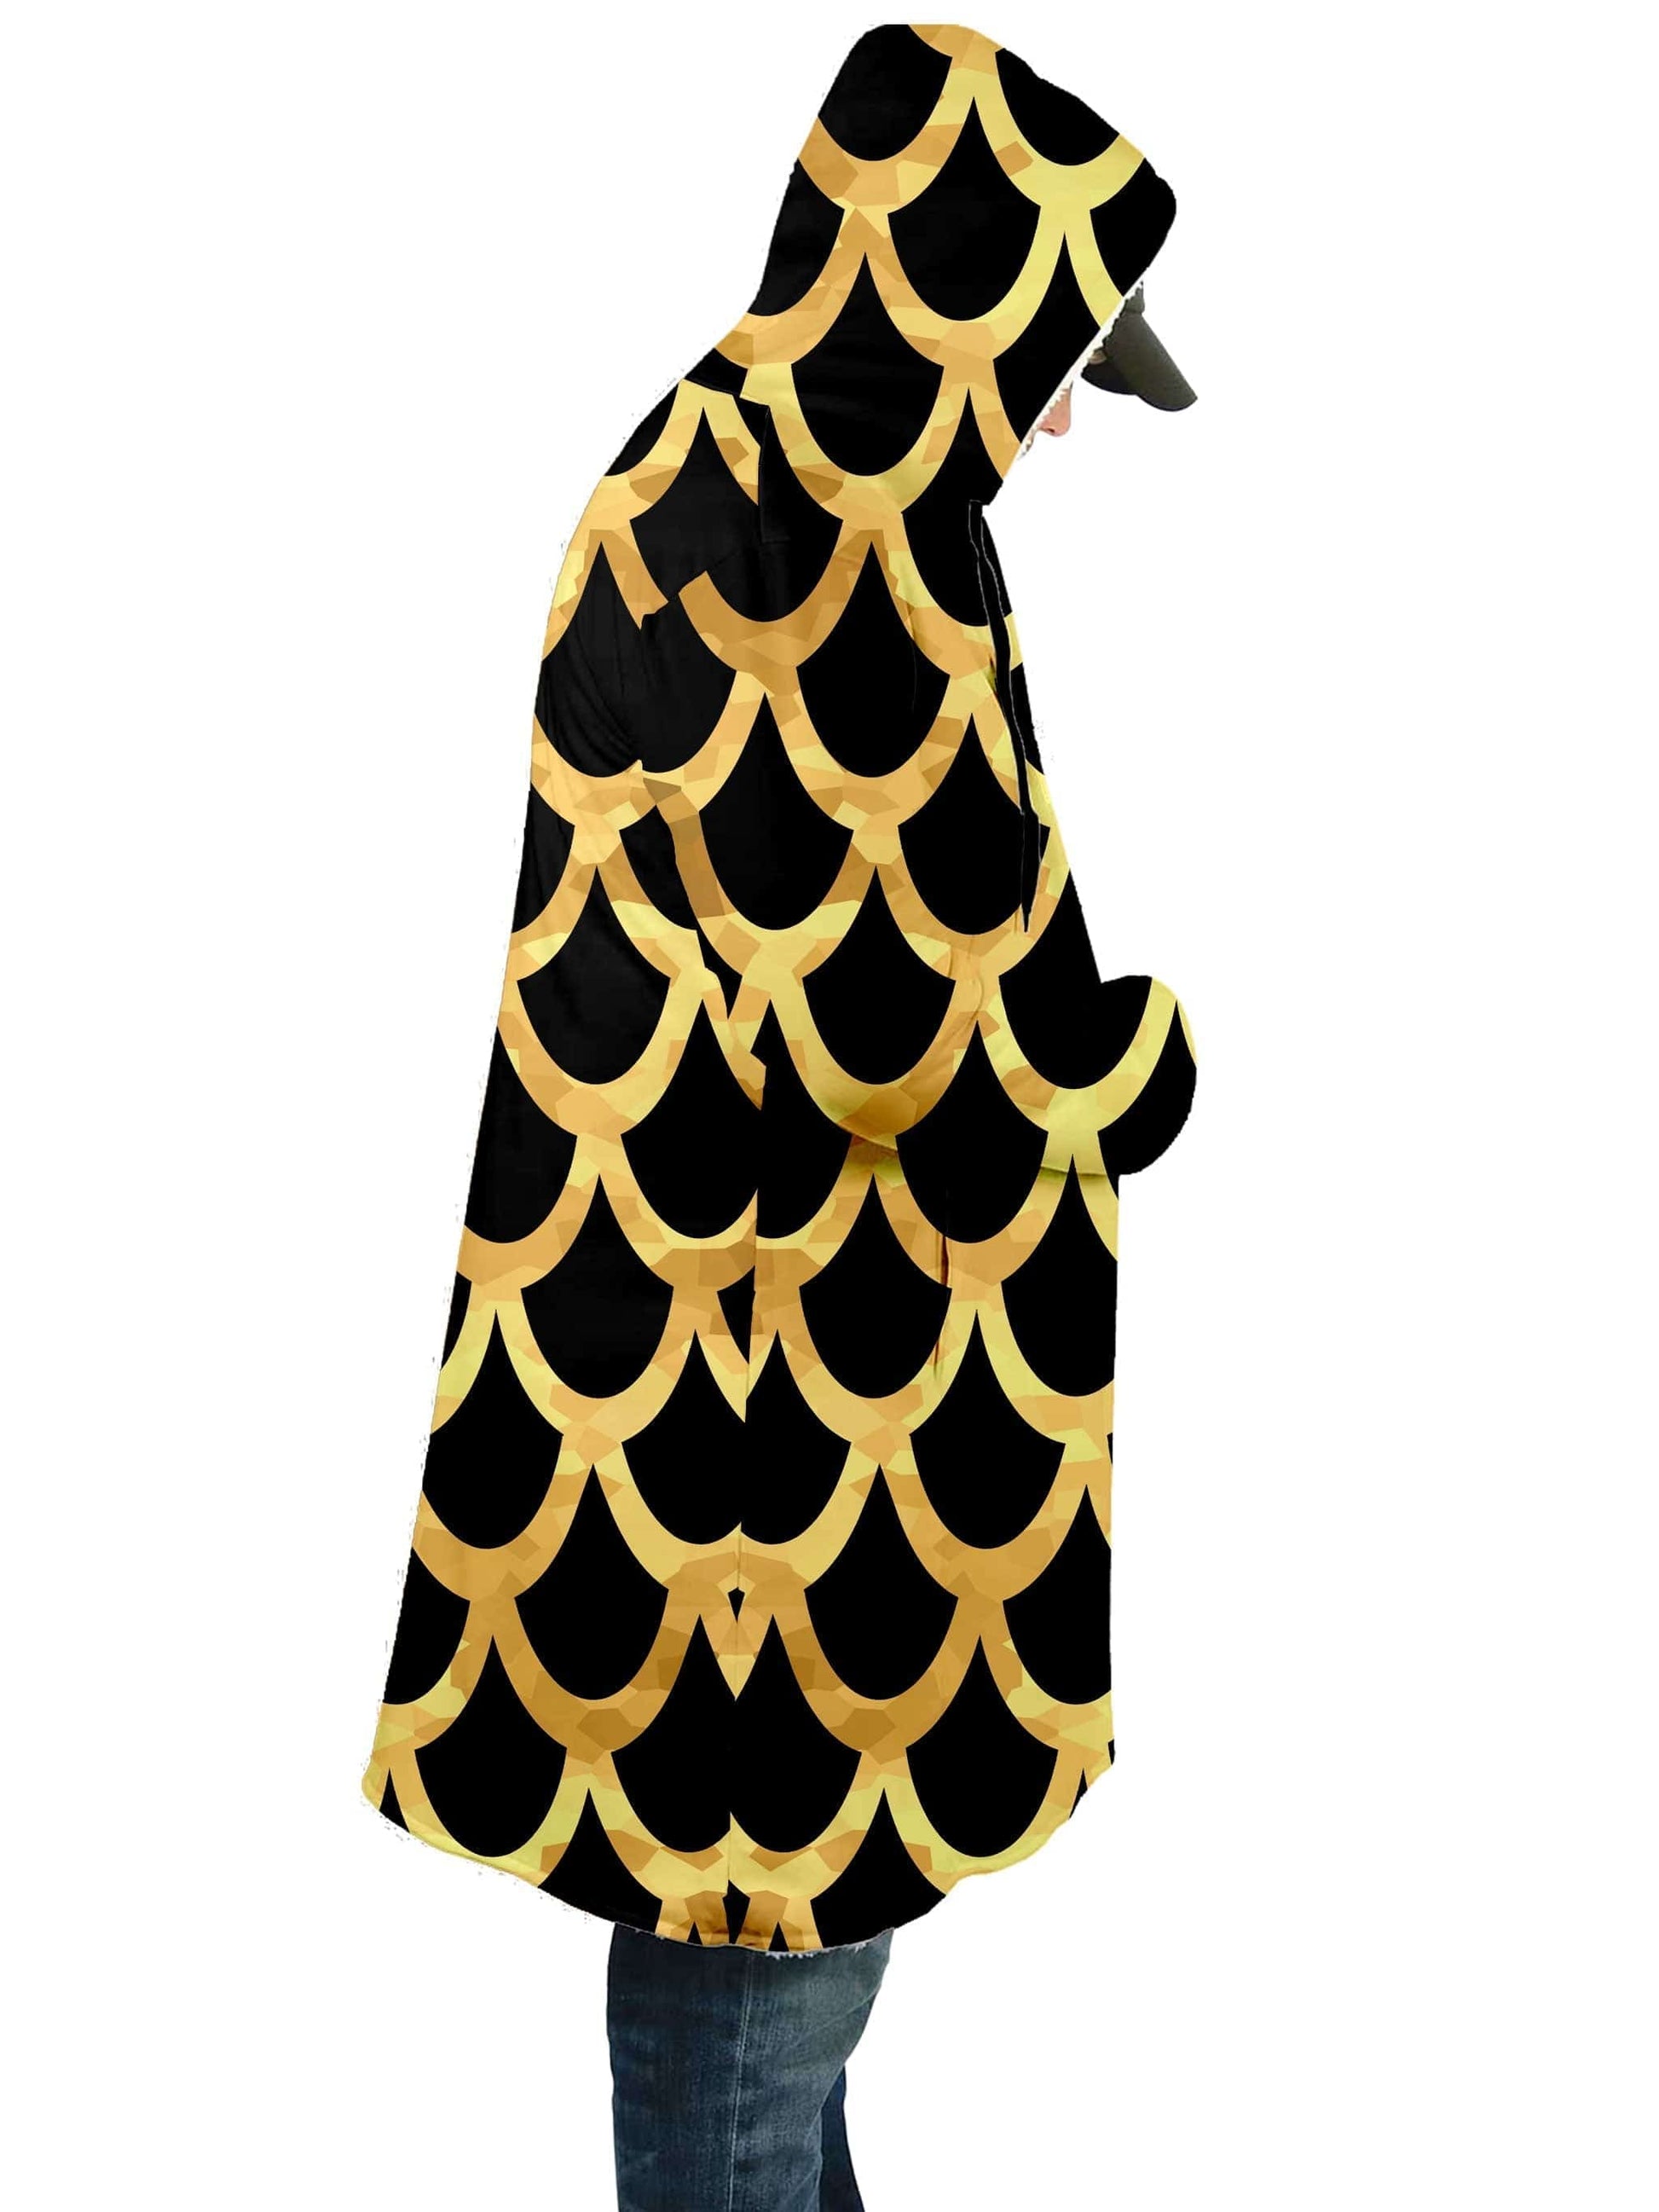 Mermaid Scales Gold Cloak, Sartoris Art, | iEDM